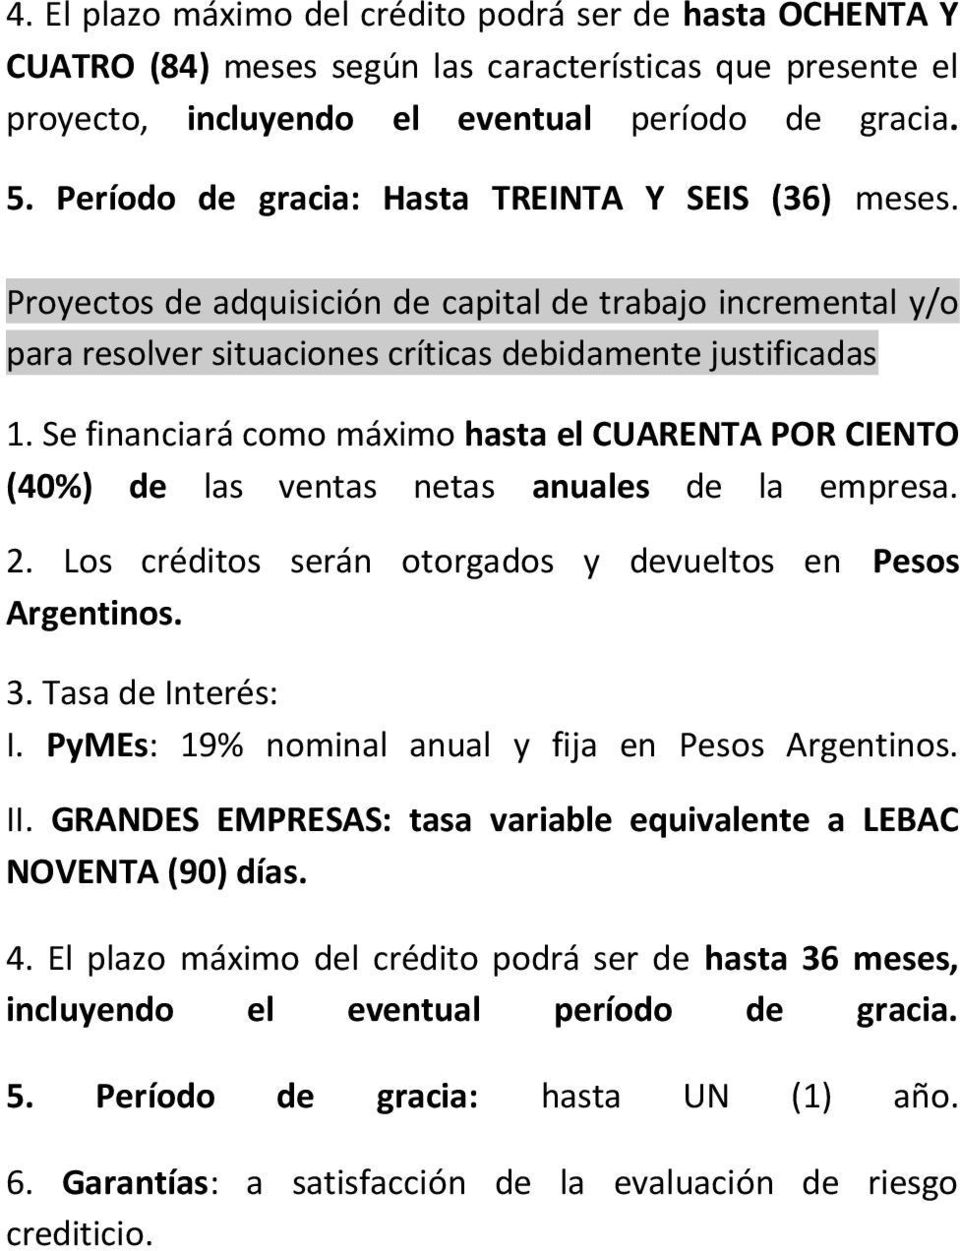 Se financiará como máximo hasta el CUARENTA POR CIENTO (40%) de las ventas netas anuales de la empresa. 2. Los créditos serán otorgados y devueltos en Pesos Argentinos. 3. Tasa de Interés: I.